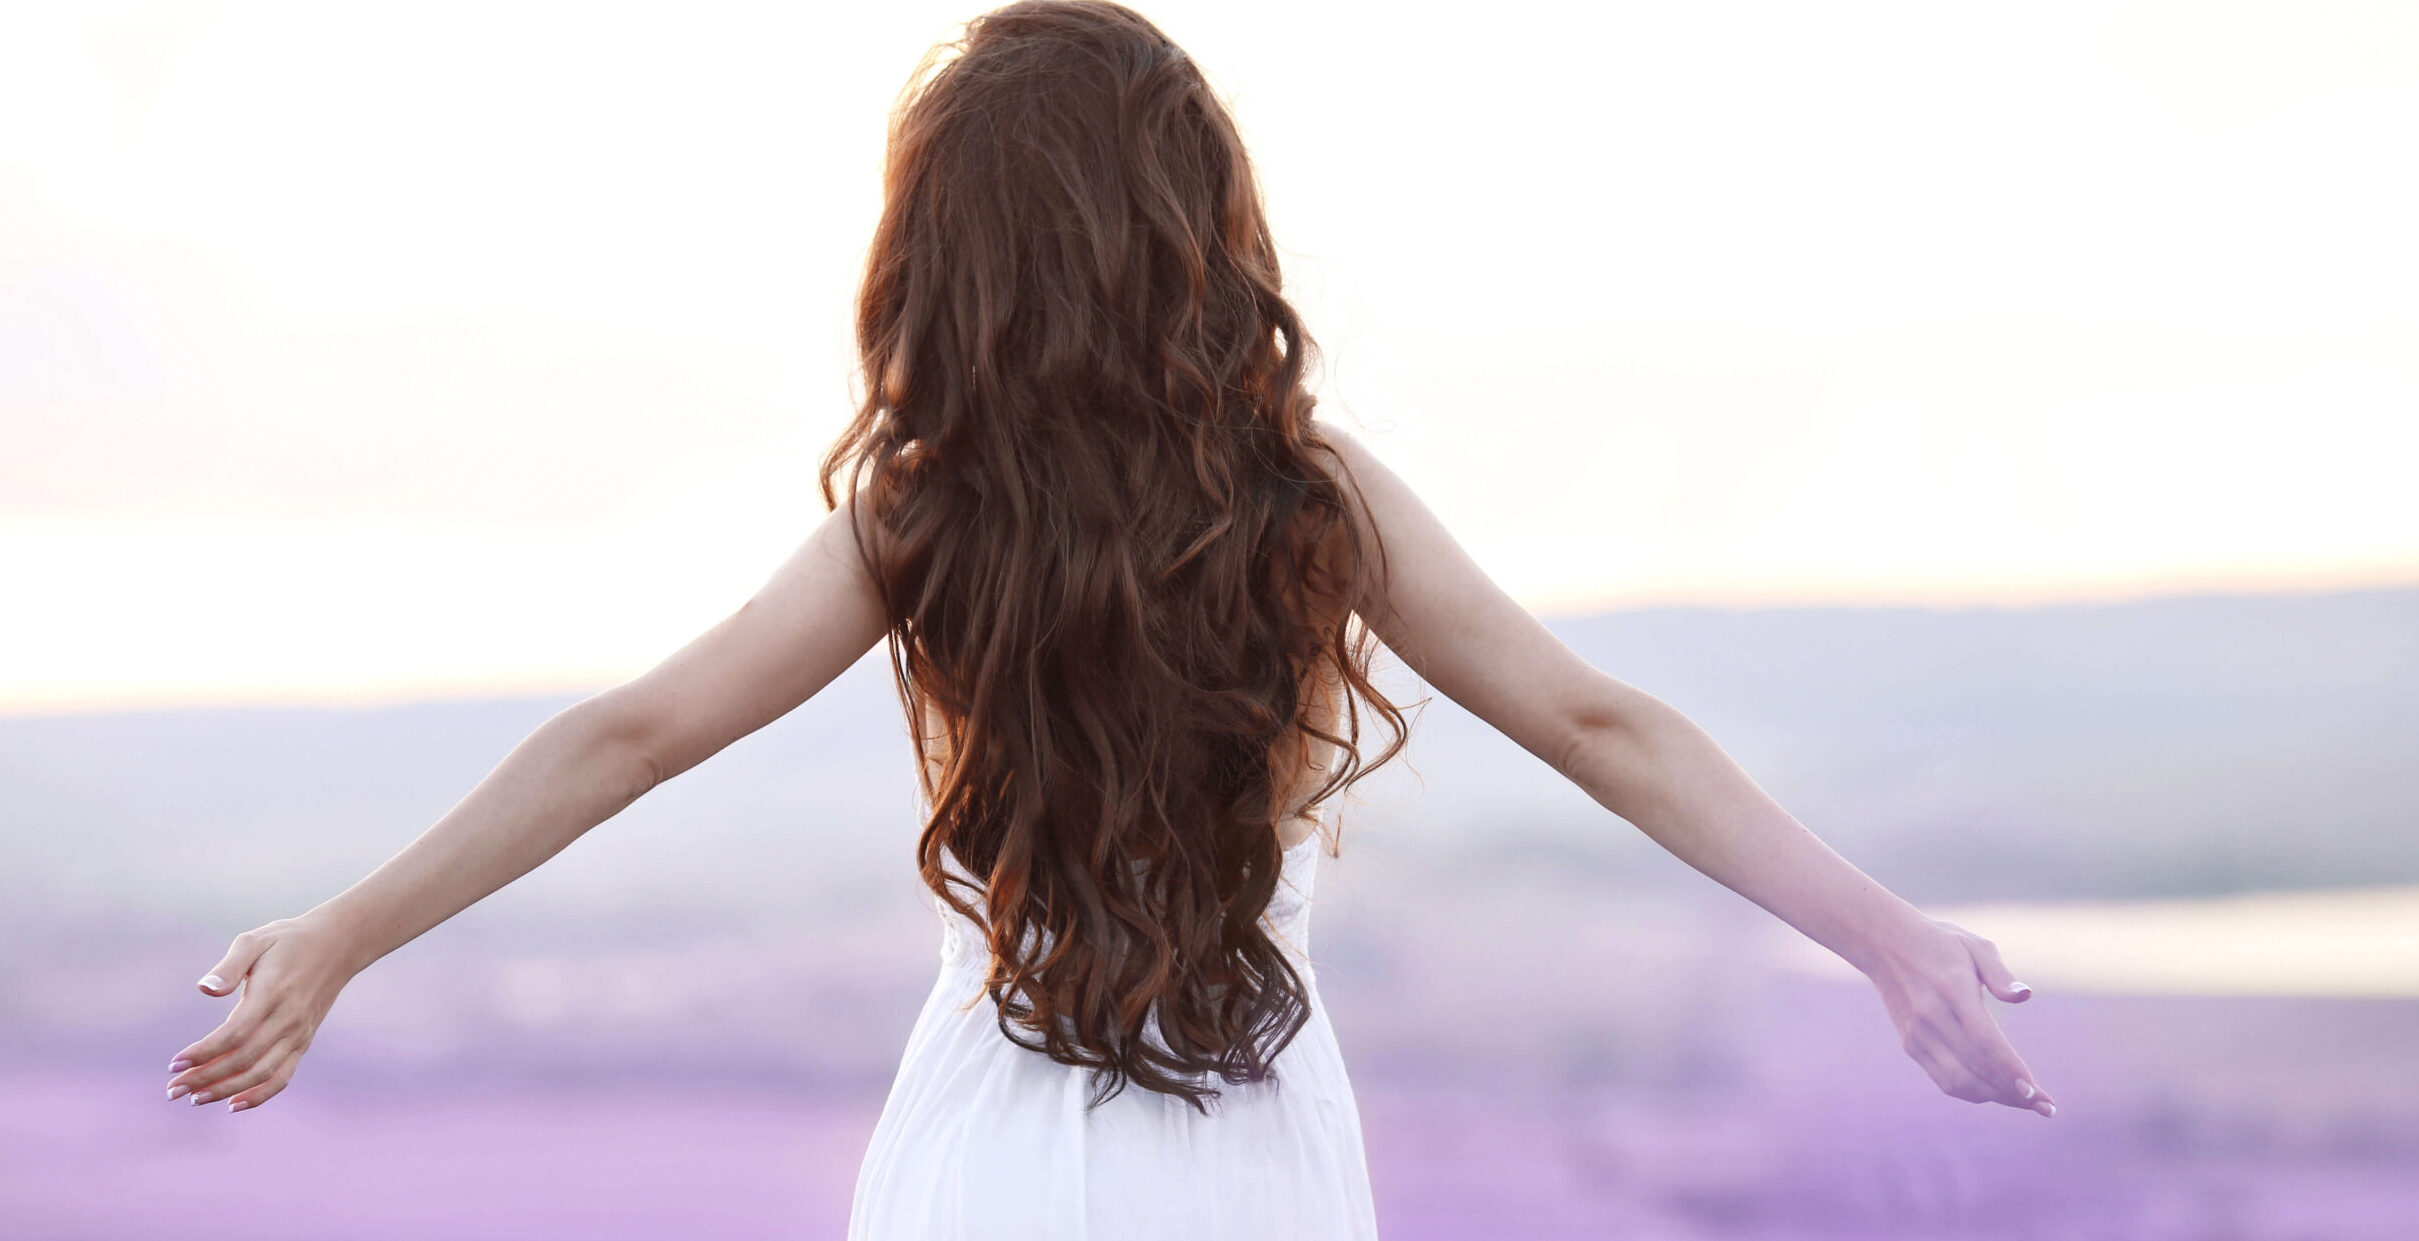 Frau mit wunderschönen langen braunen Haaren läuft durch ein Lavendelfeld